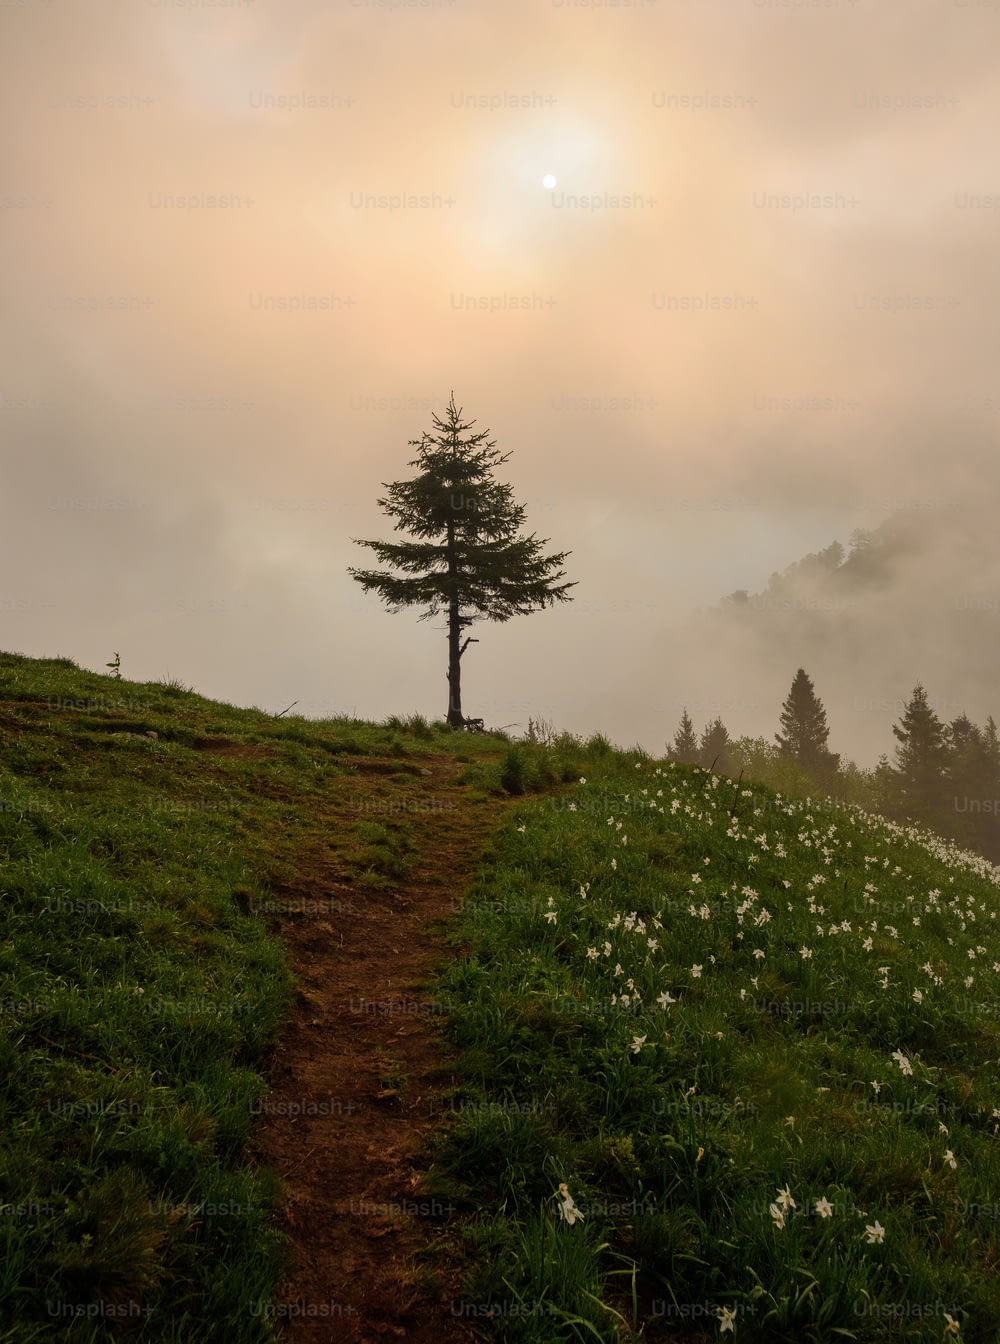 Ein einsamer Baum steht auf einem grasbewachsenen Hügel